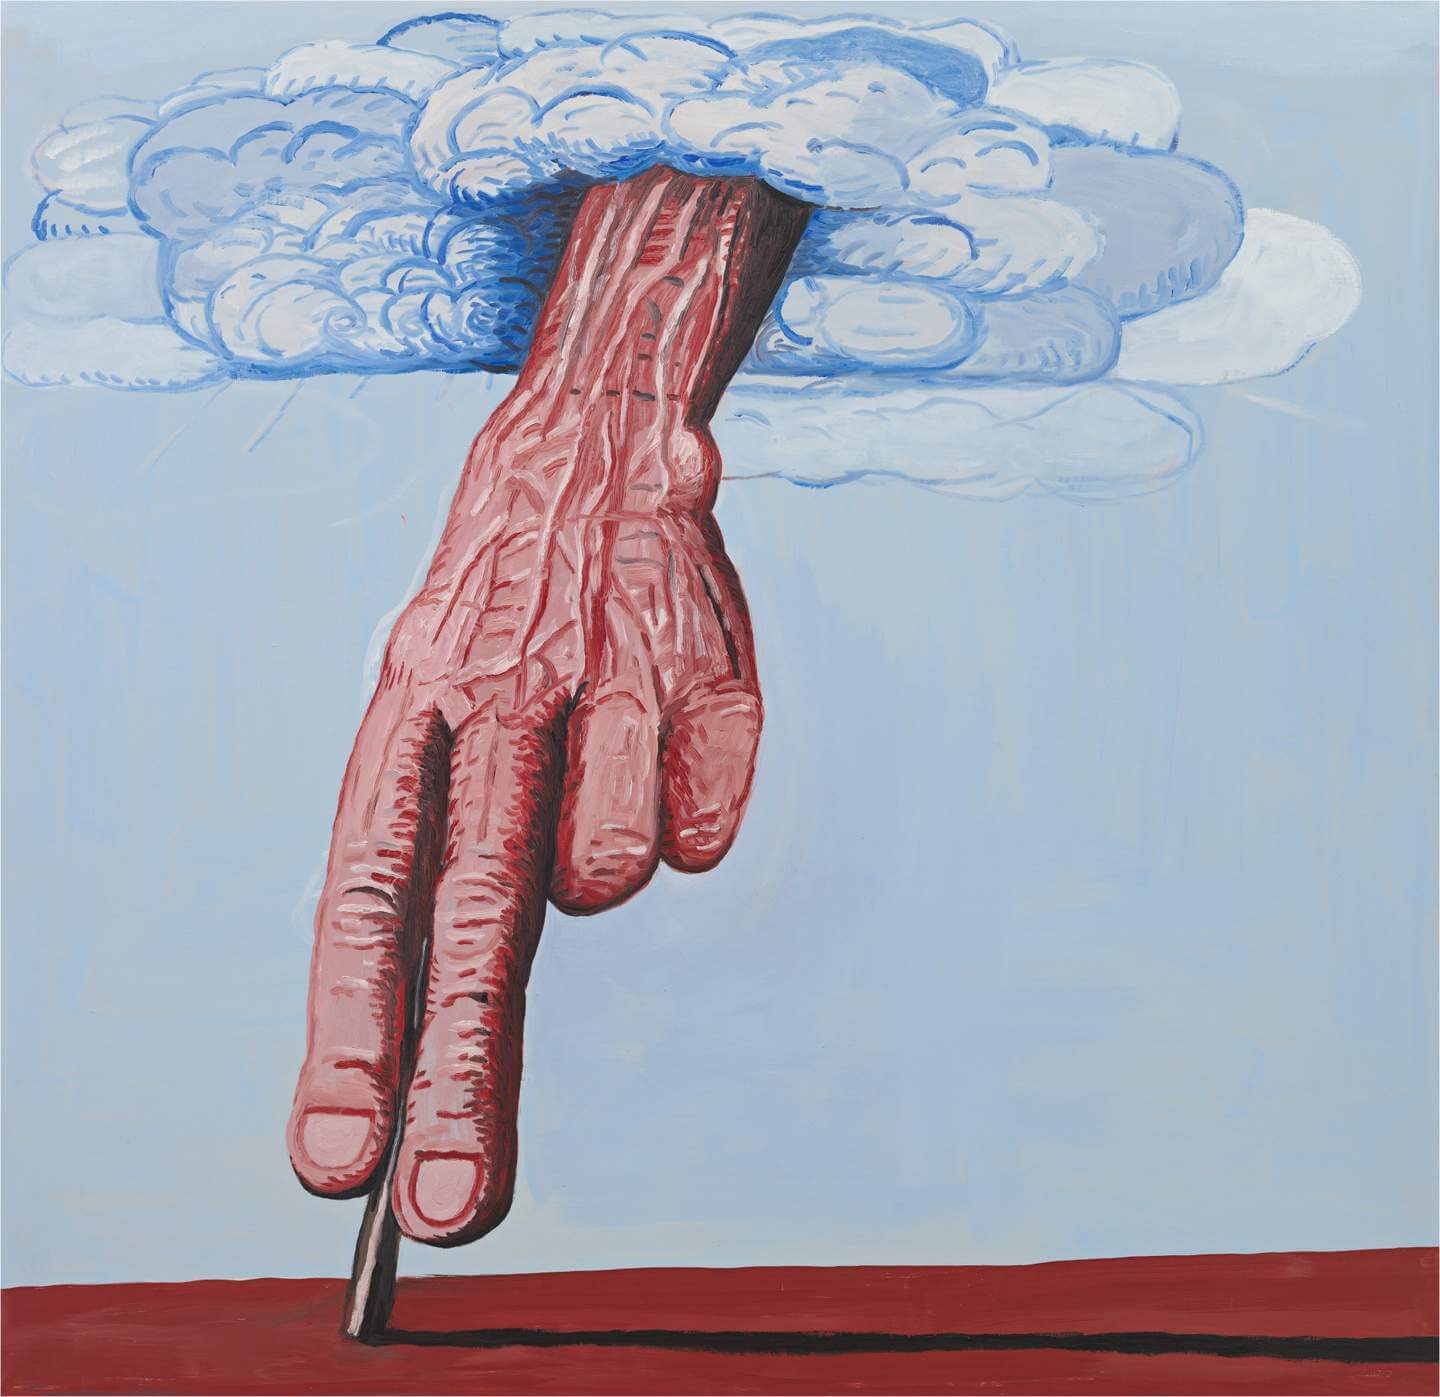 Philip Guston, 'The Line', 1978, huile sur toile, 180.3 × 186.1 cm © The Estate of Philip Guston, courtesy Hauser & Wirth